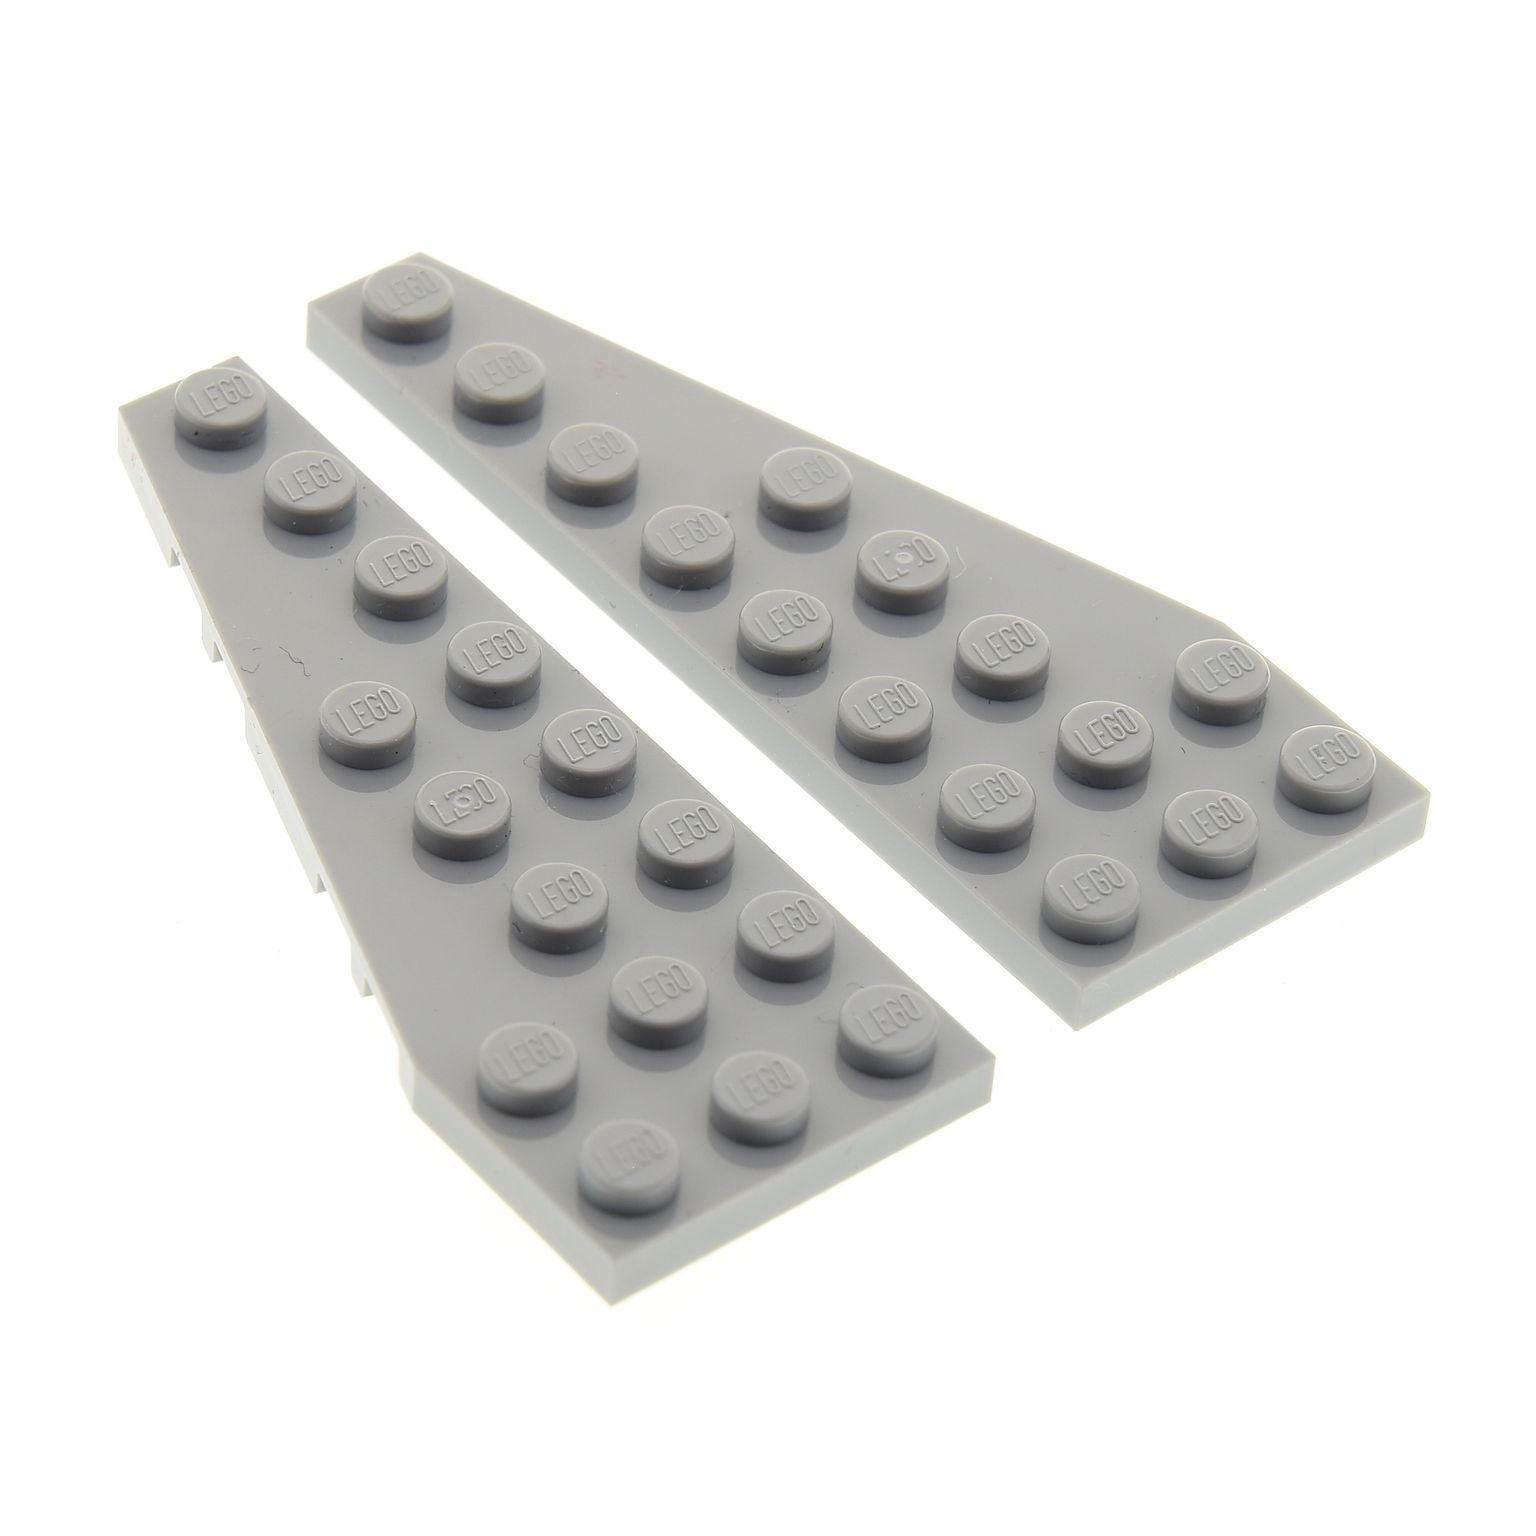 NEU / NEW Lego Flügel gray Wedge Plate Platte rechts 50304 grau 8 x 3 